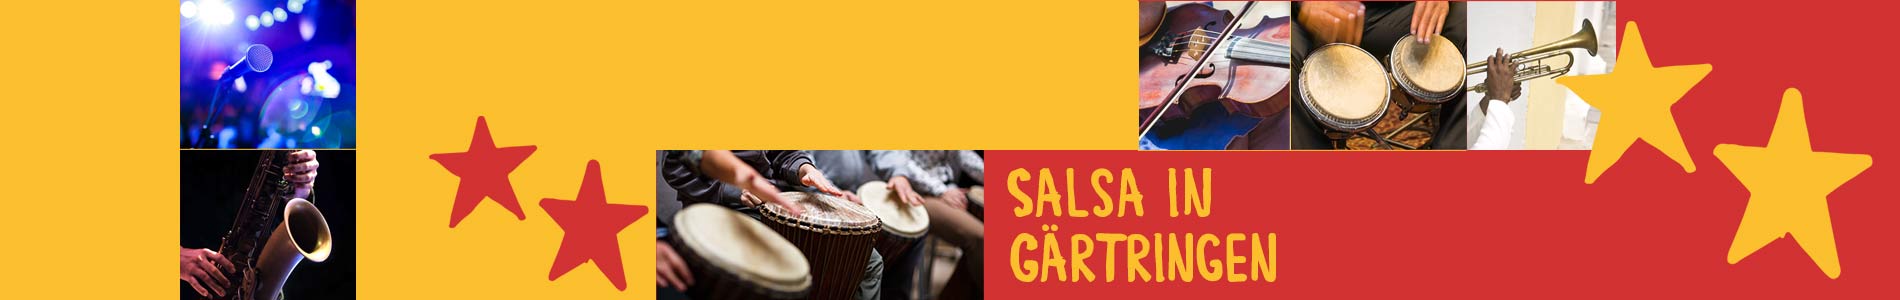 Salsa in Gärtringen – Salsa lernen und tanzen, Tanzkurse, Partys, Veranstaltungen